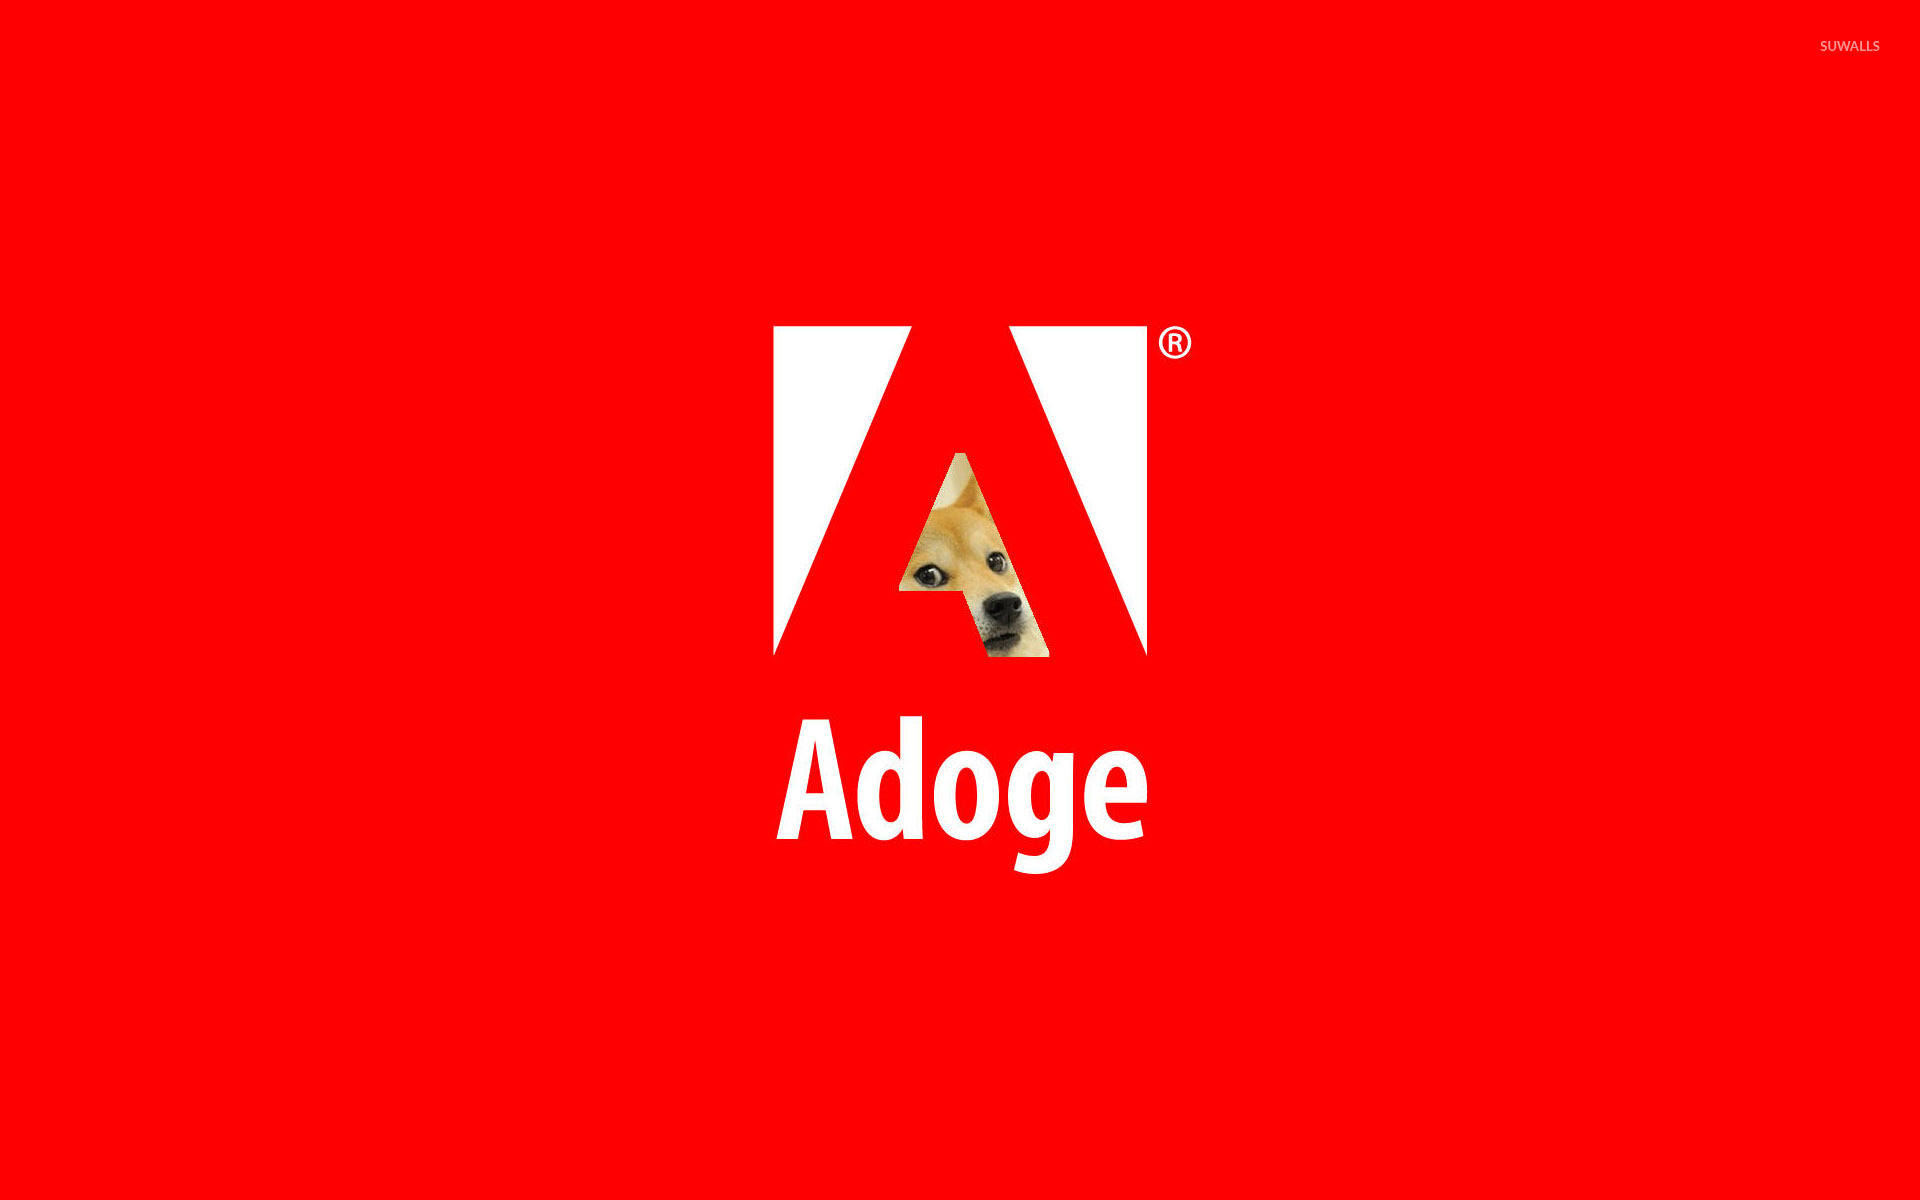 Adoge Doge Meme Background